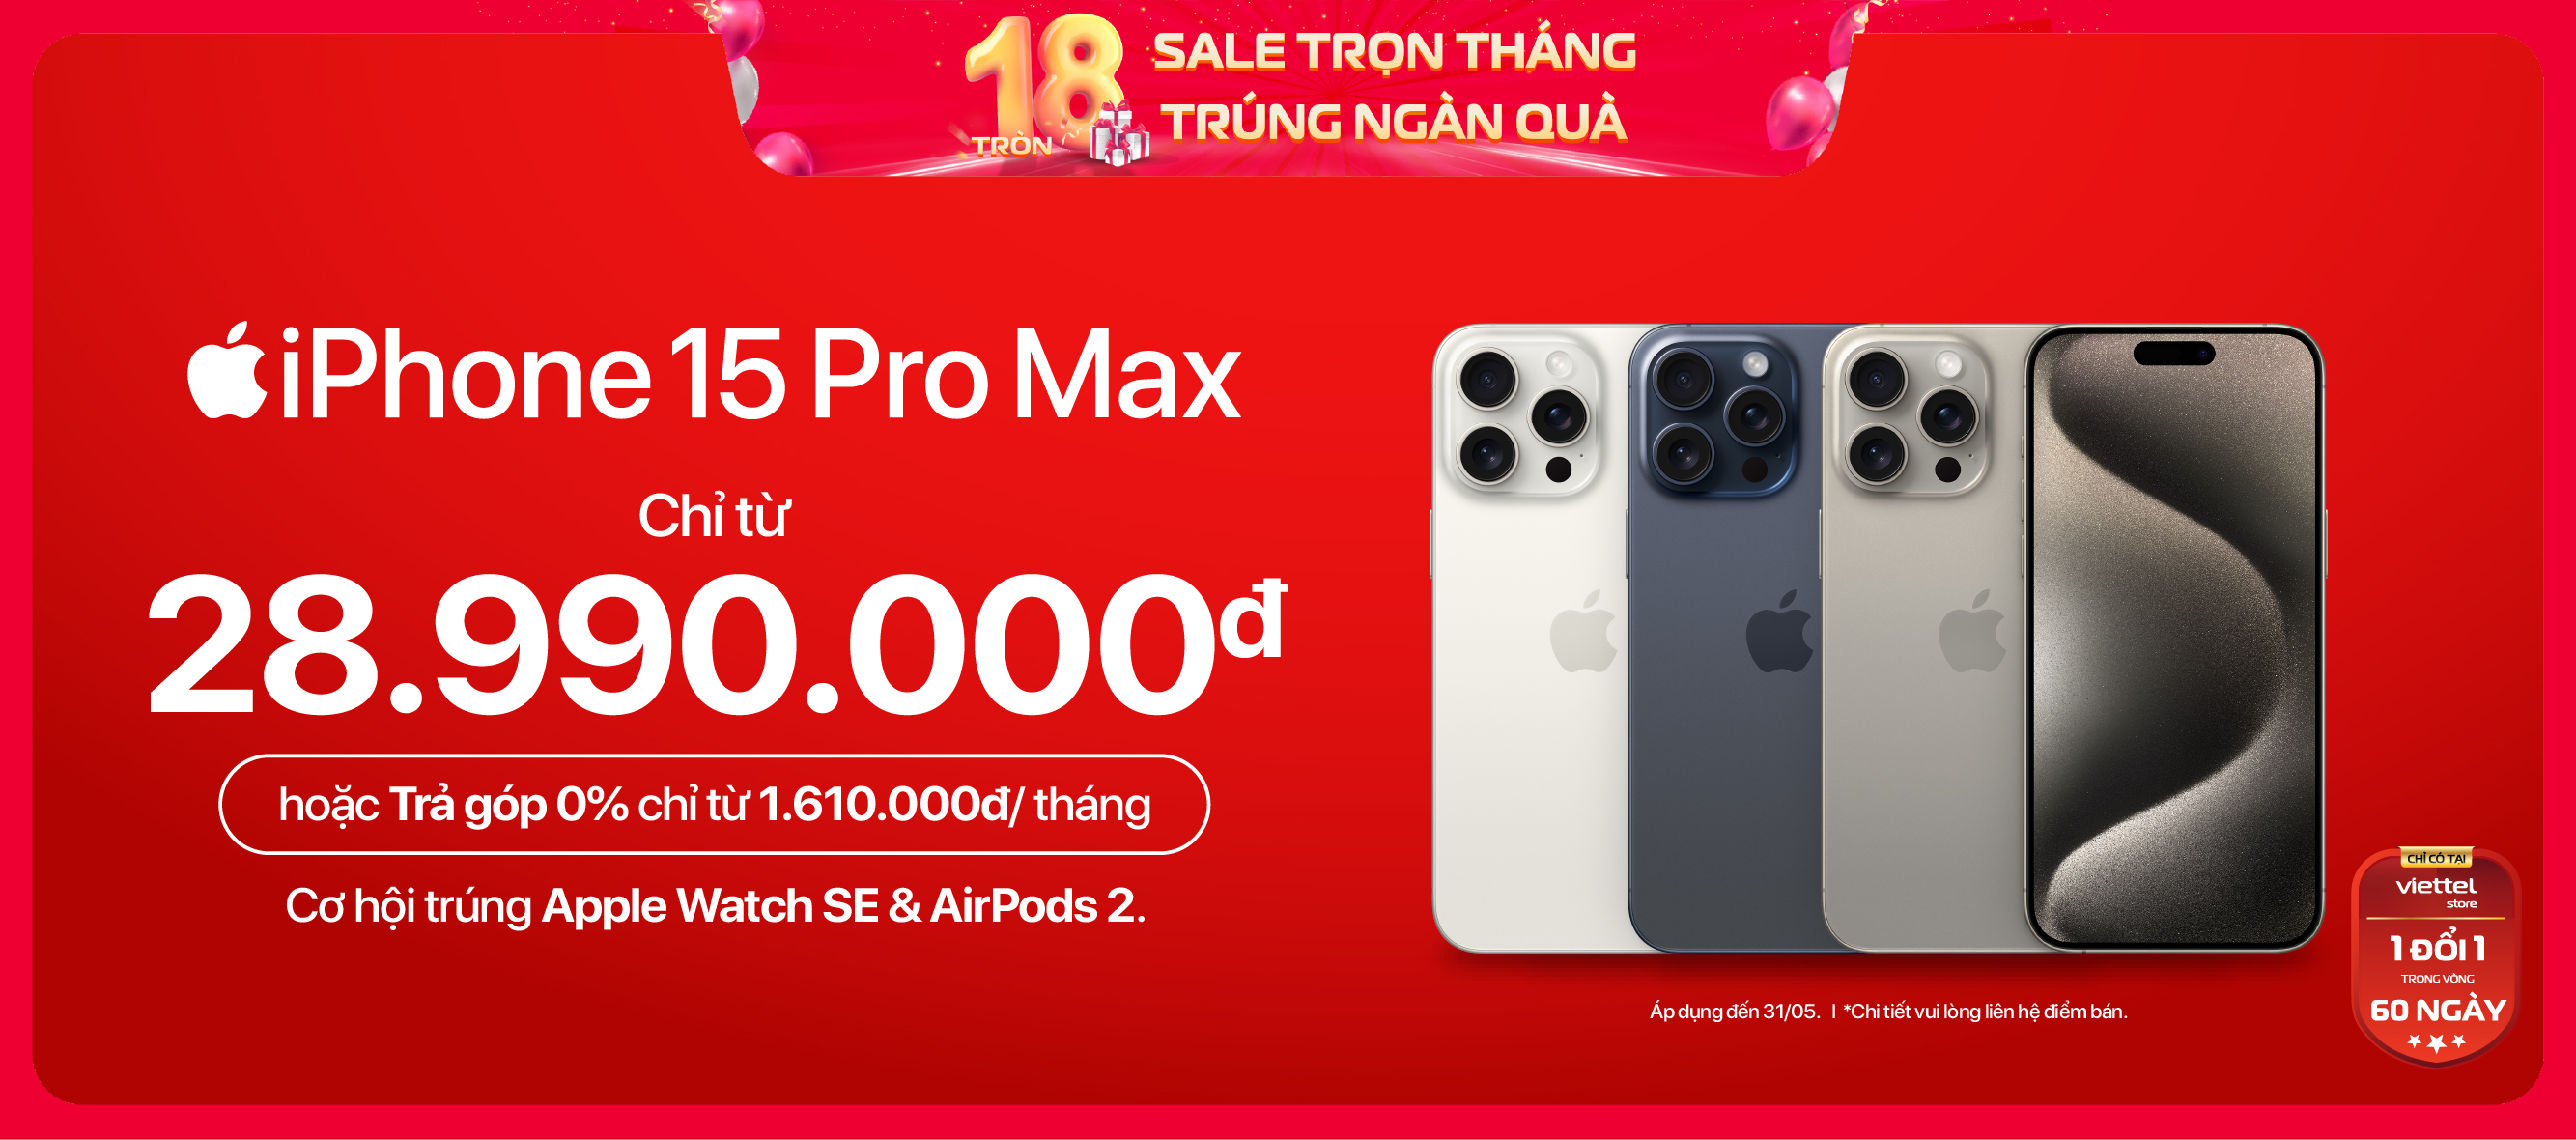 iPhone 15 Pro Max \n Chỉ từ 28.990.000đ